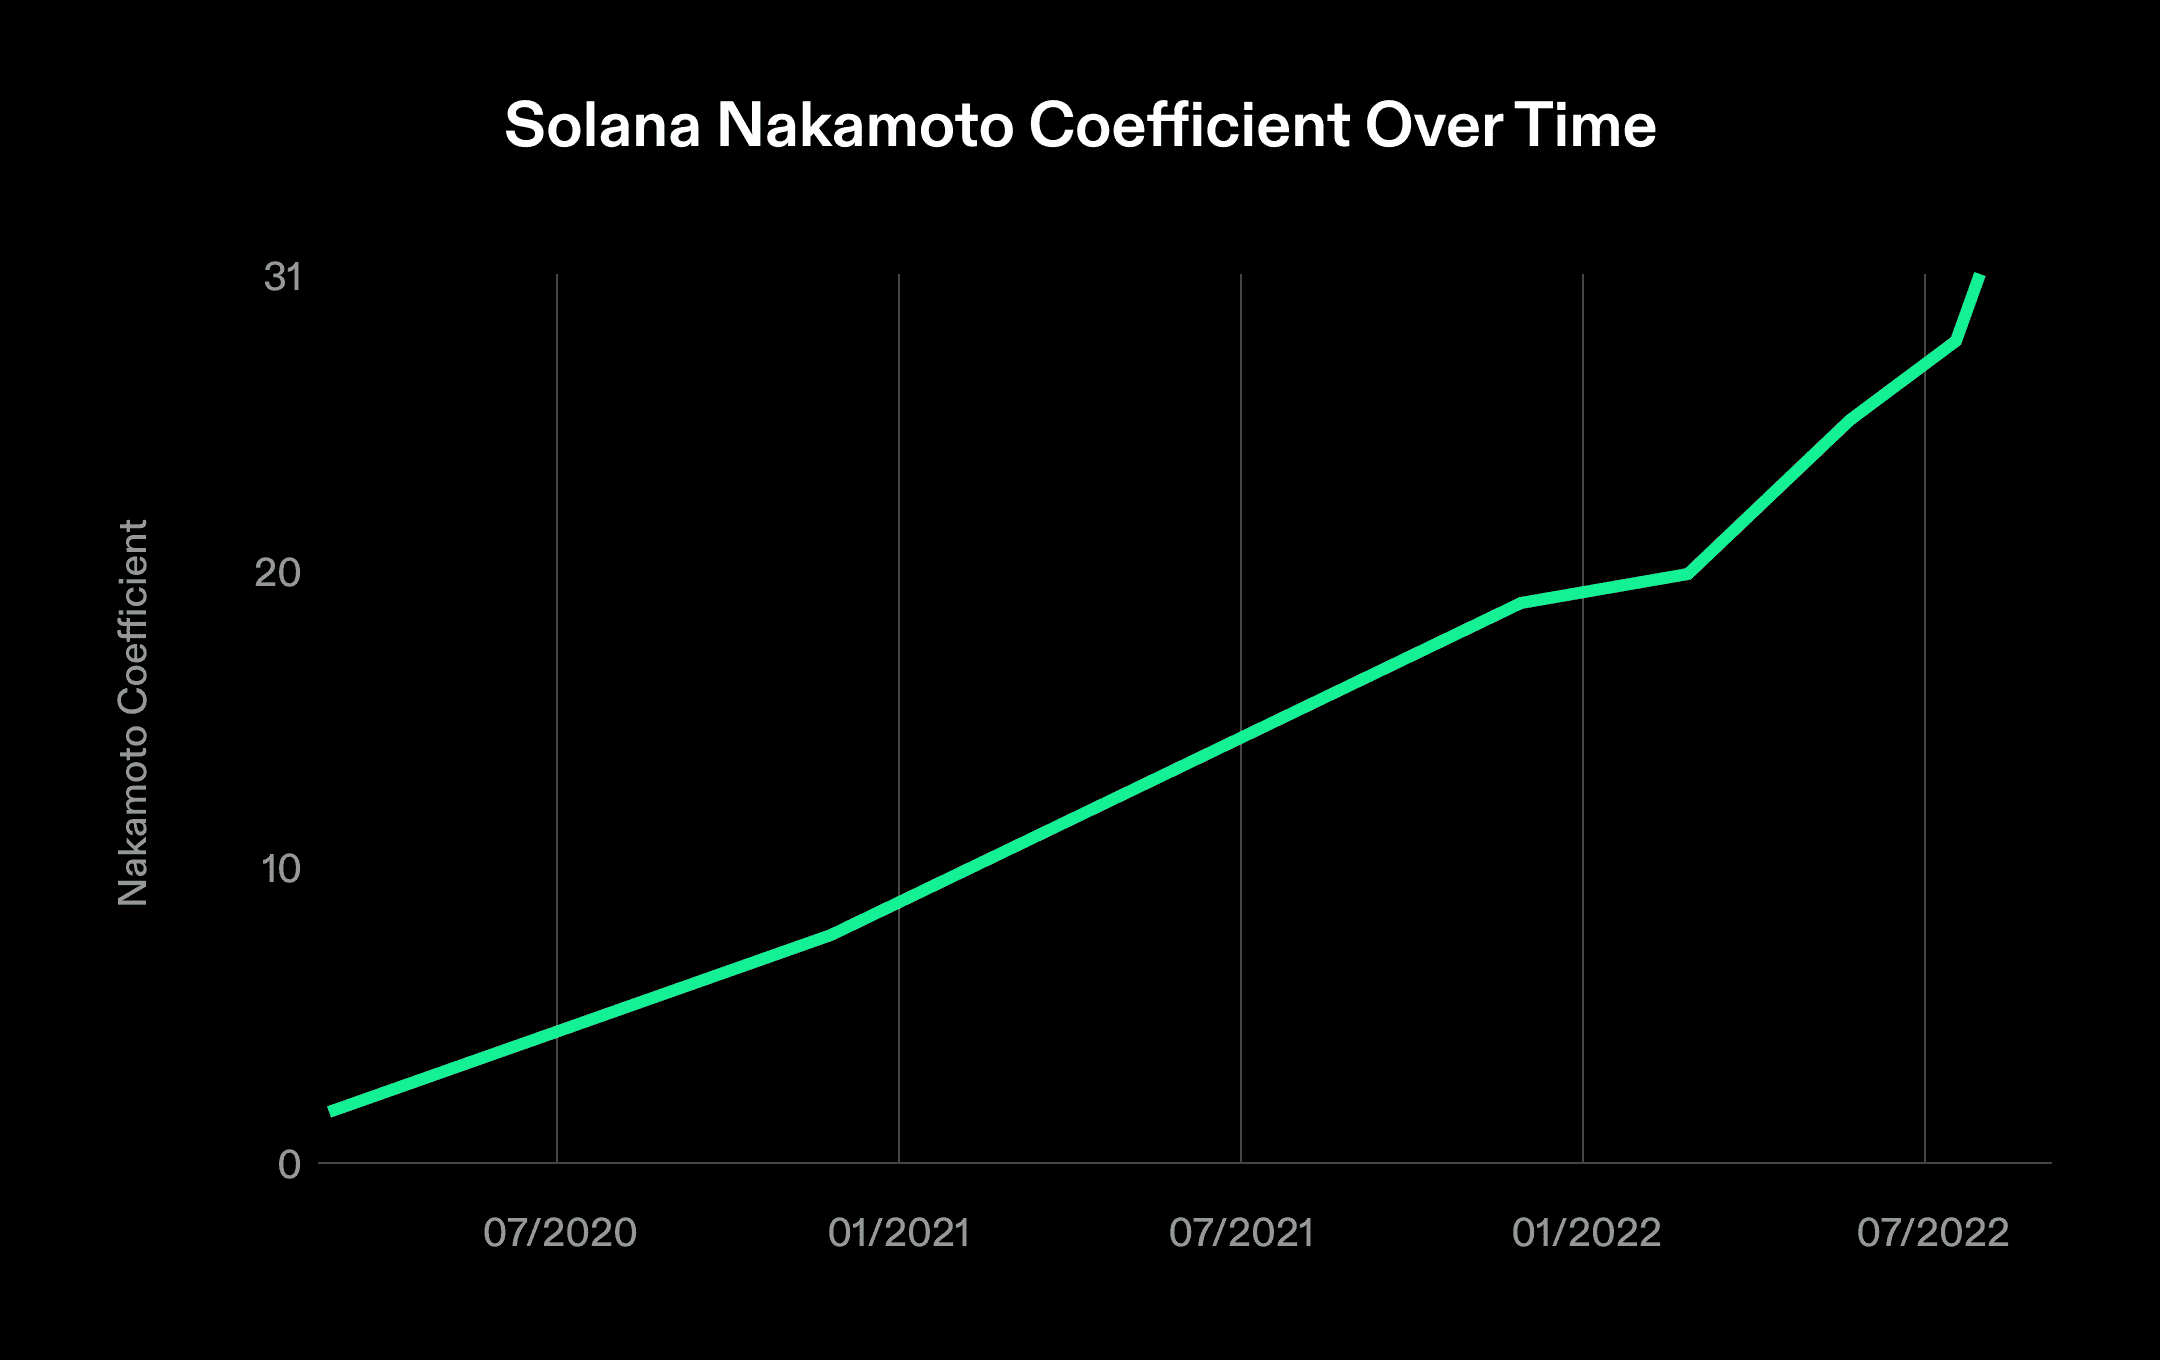 SOL tiếp tục - Tất cả lý do đằng sau sự tăng giá mới nhất của Solana 47